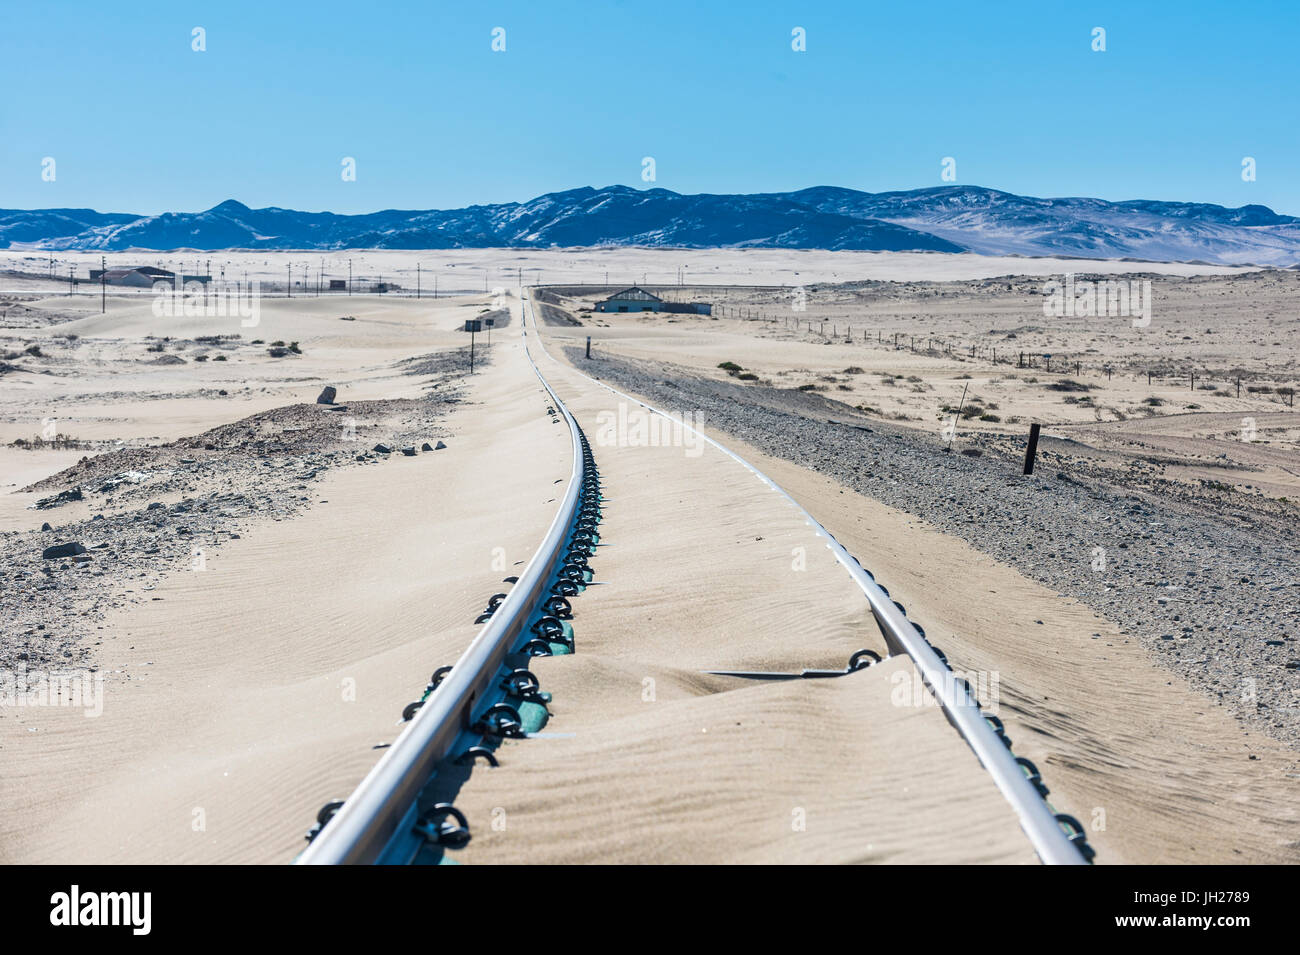 Les voies de chemin de fer survolés par le sable, vieille ville fantôme de diamants, Kolmanskop, près de Lüderitz, Namibie, Afrique Banque D'Images